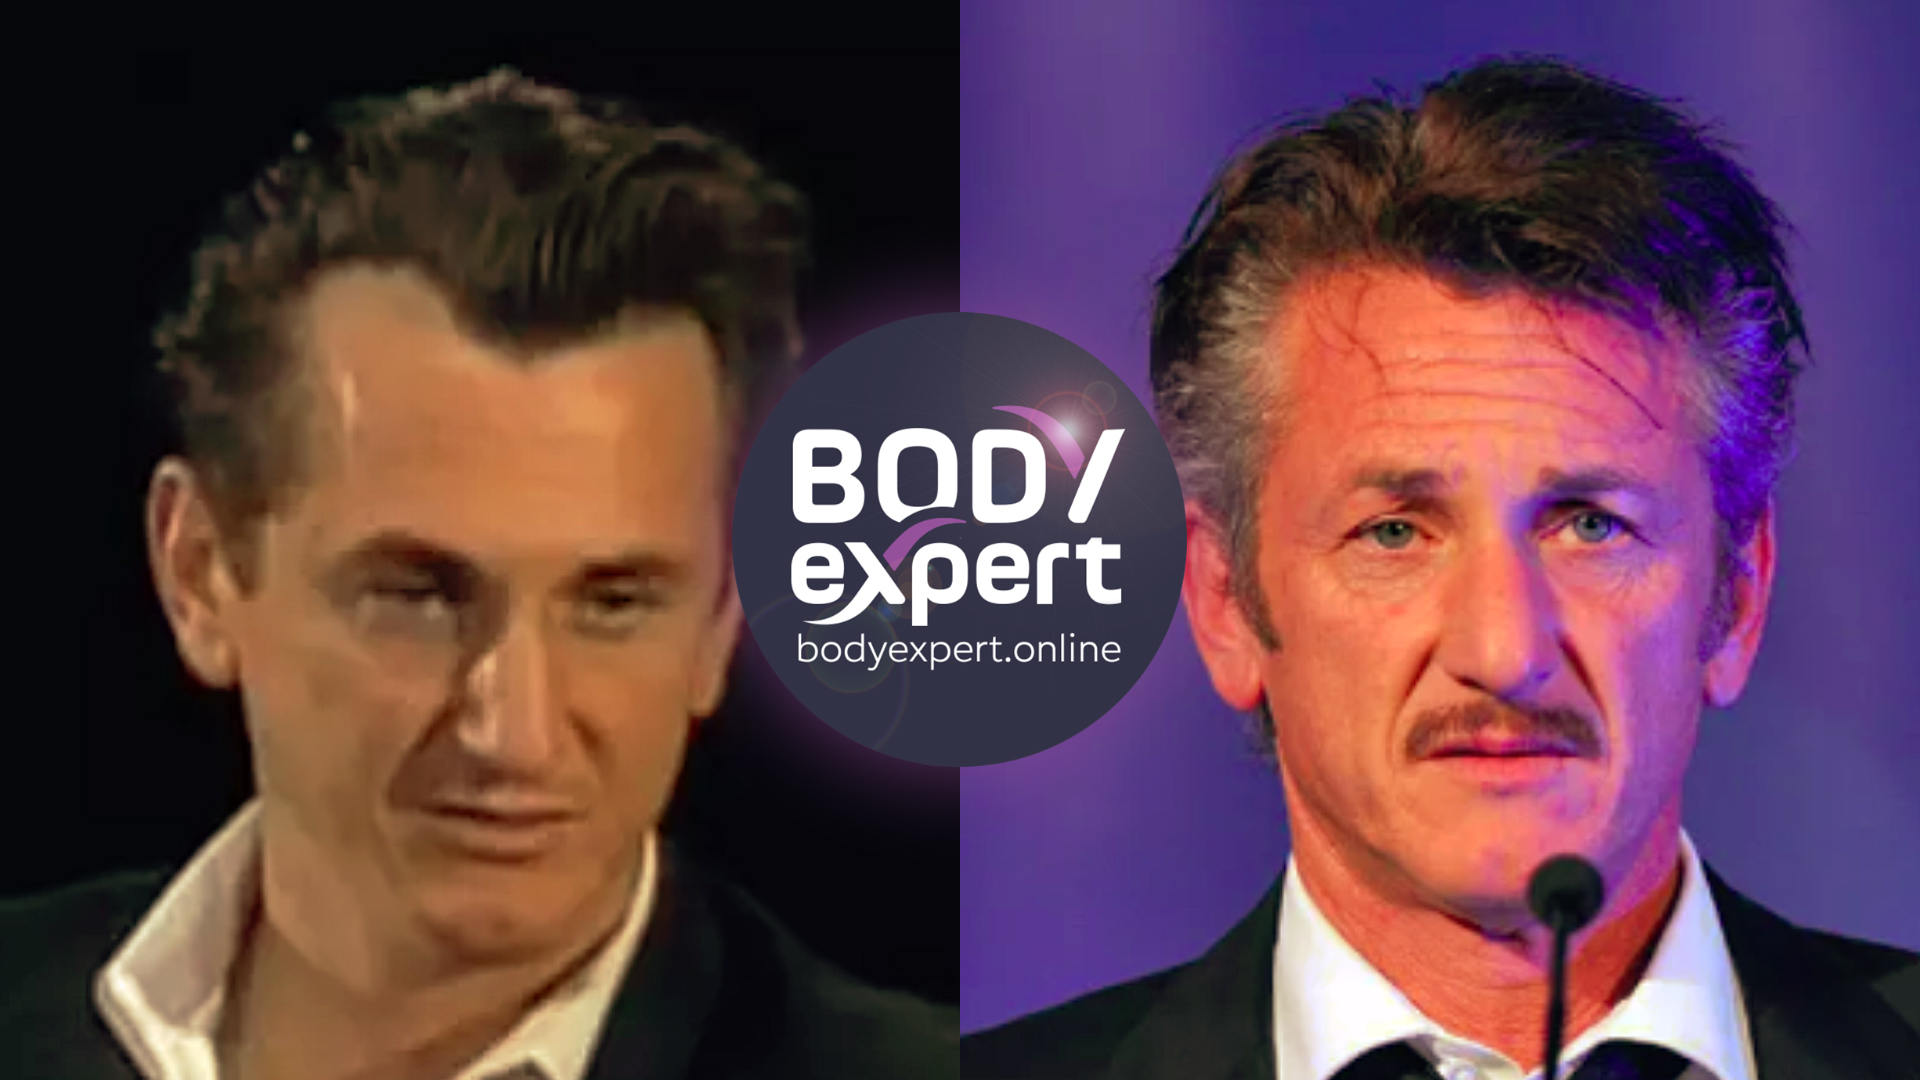 has Sean Penn had a hair transplant?